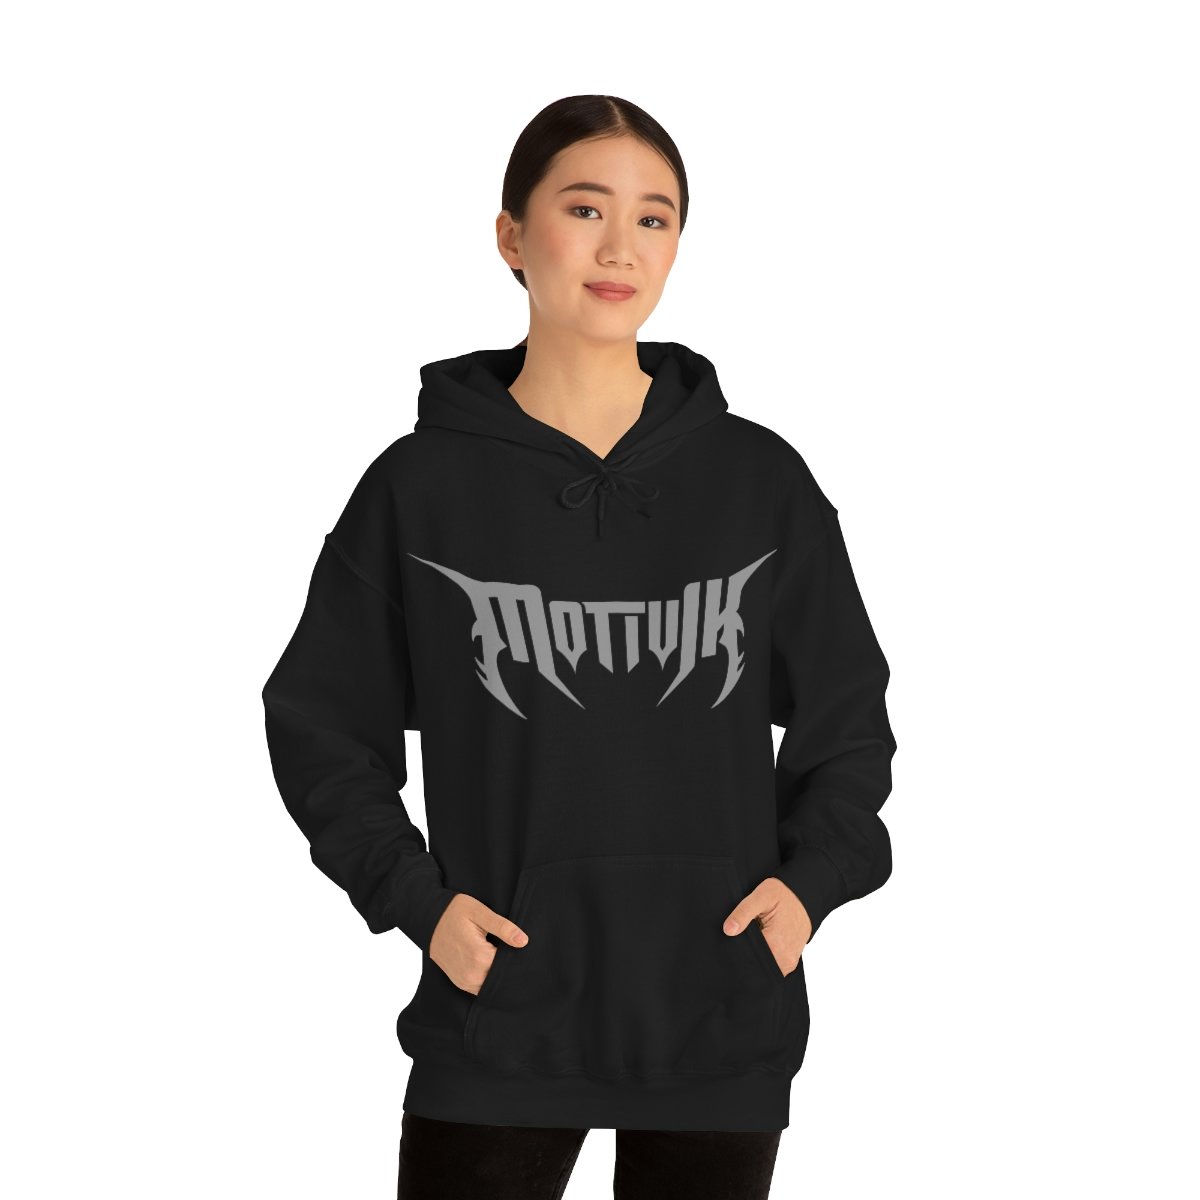 Motivik Grey Logo Pullover Hooded Sweatshirt